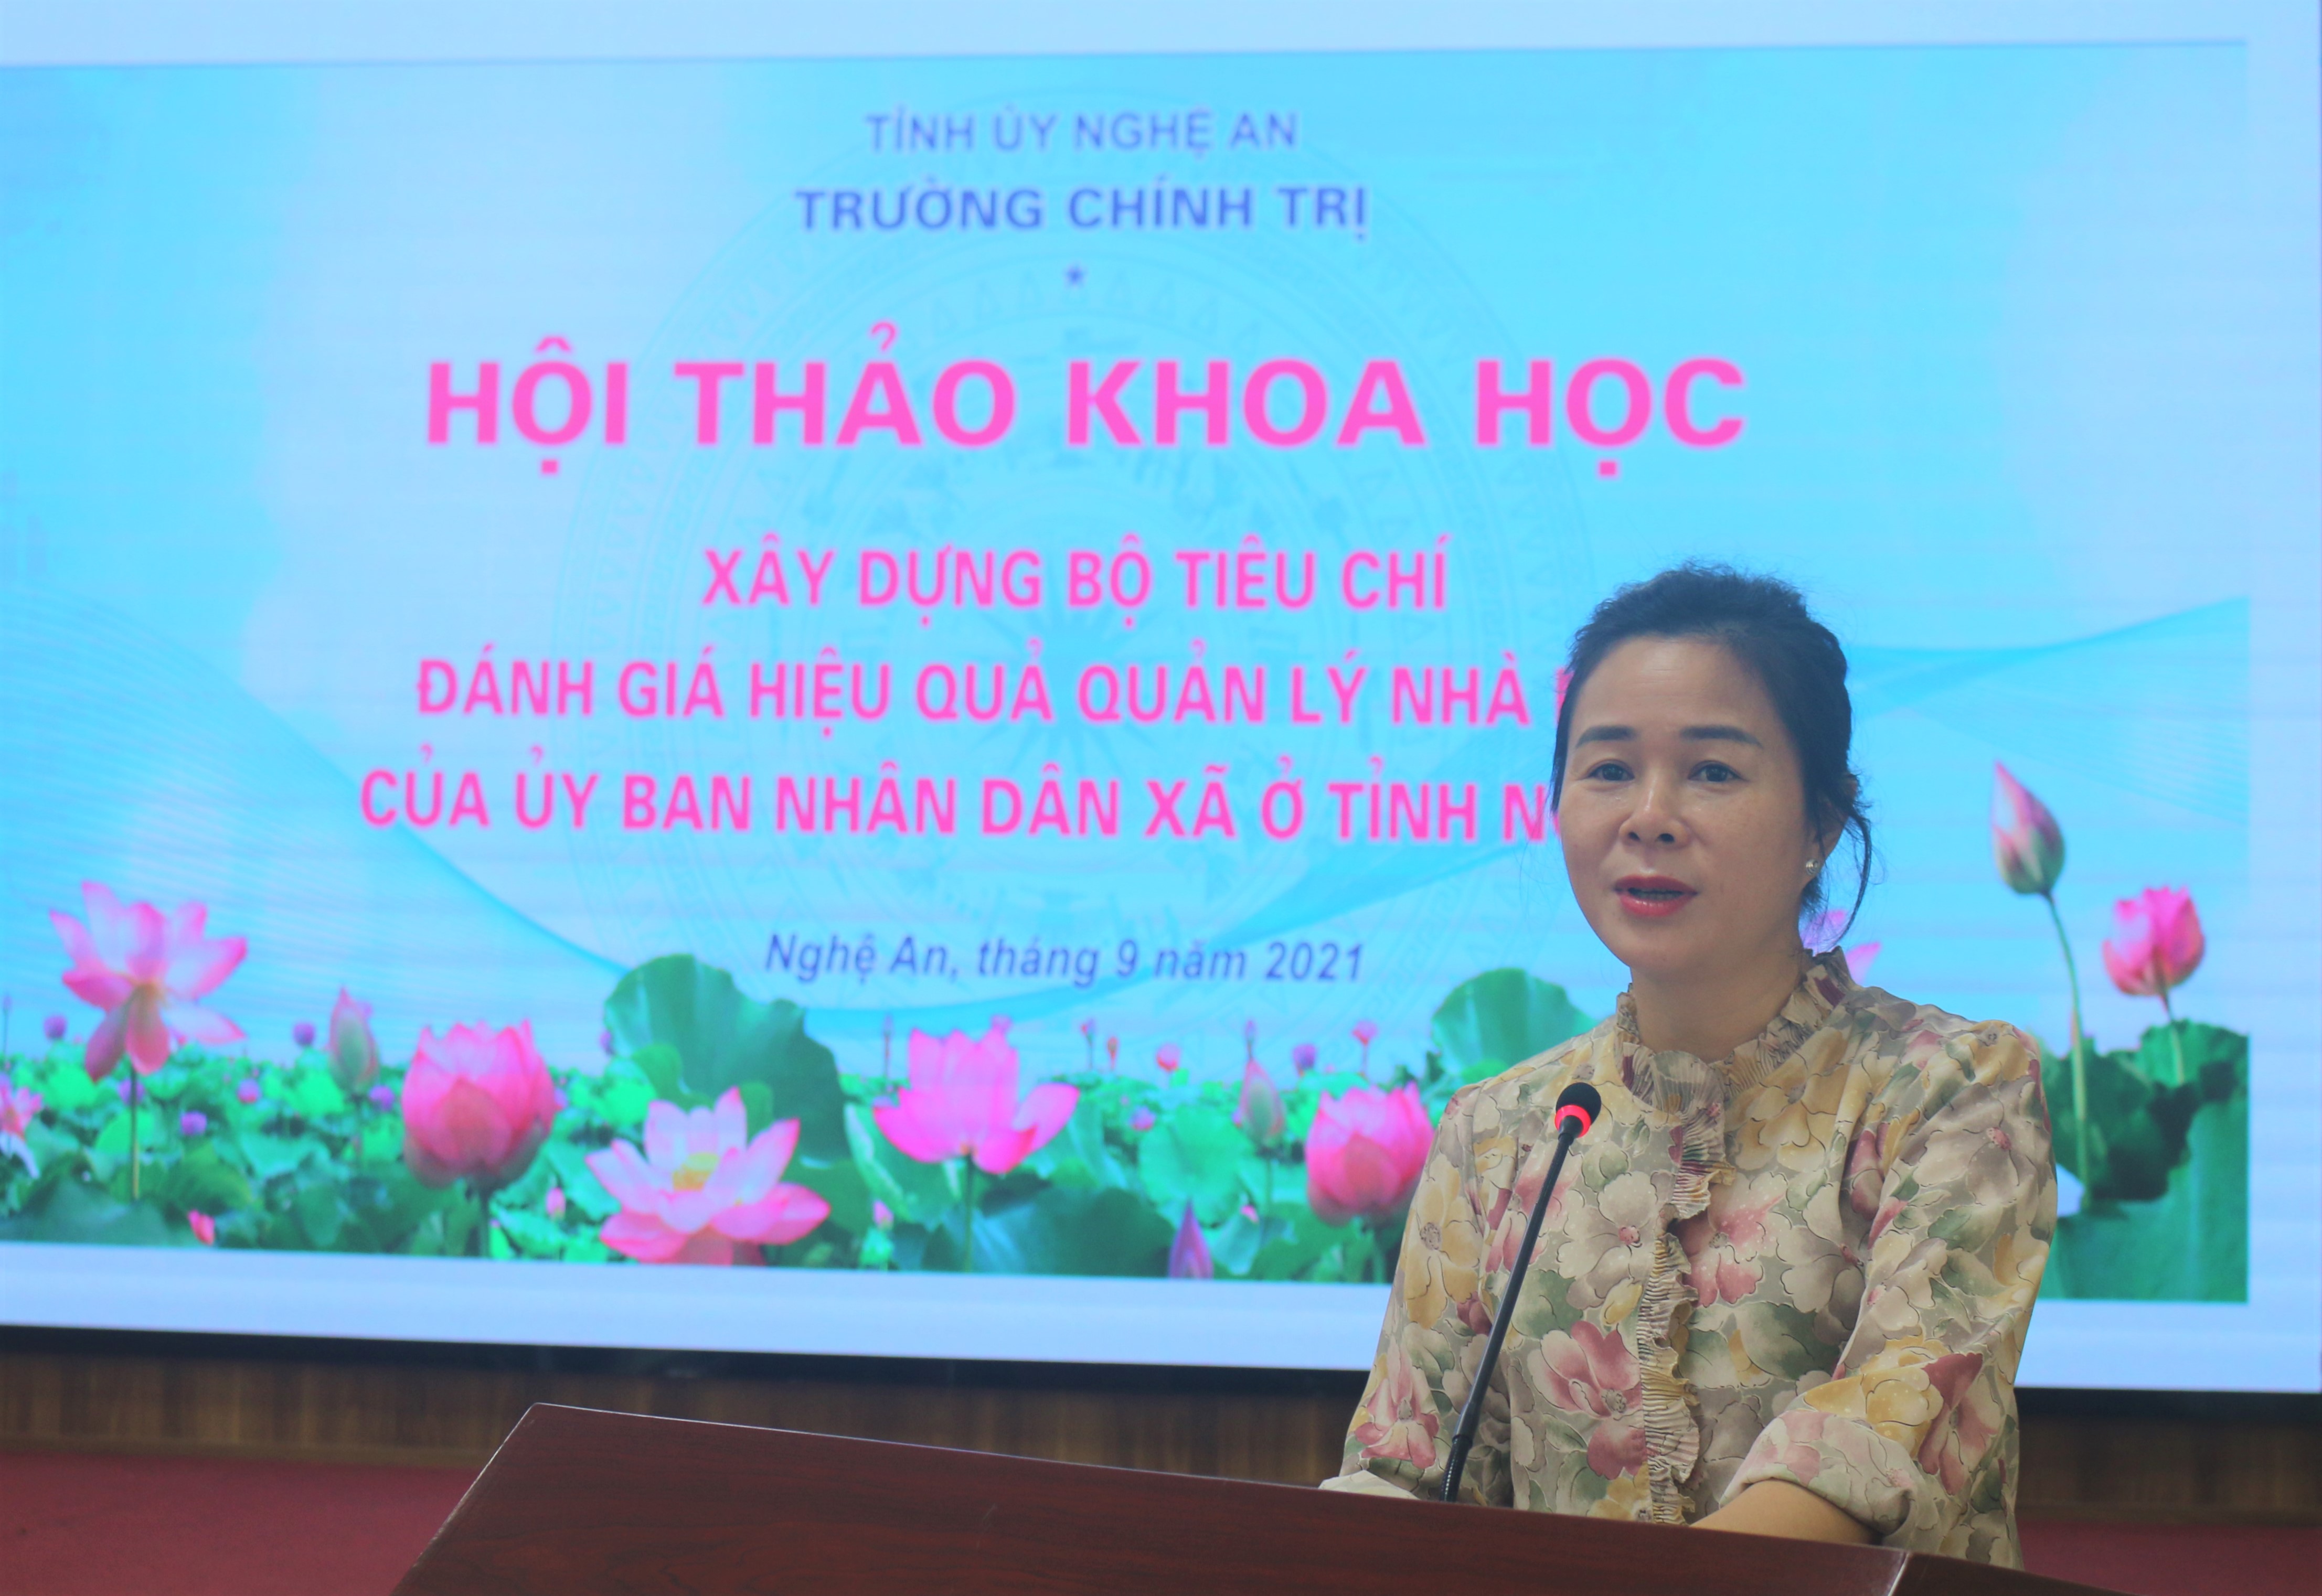 Hội thảo khoa học “Xây dựng bộ tiêu chí đánh giá hiệu quả quản lý nhà nước của Ủy ban nhân dân xã ở tỉnh Nghệ An”